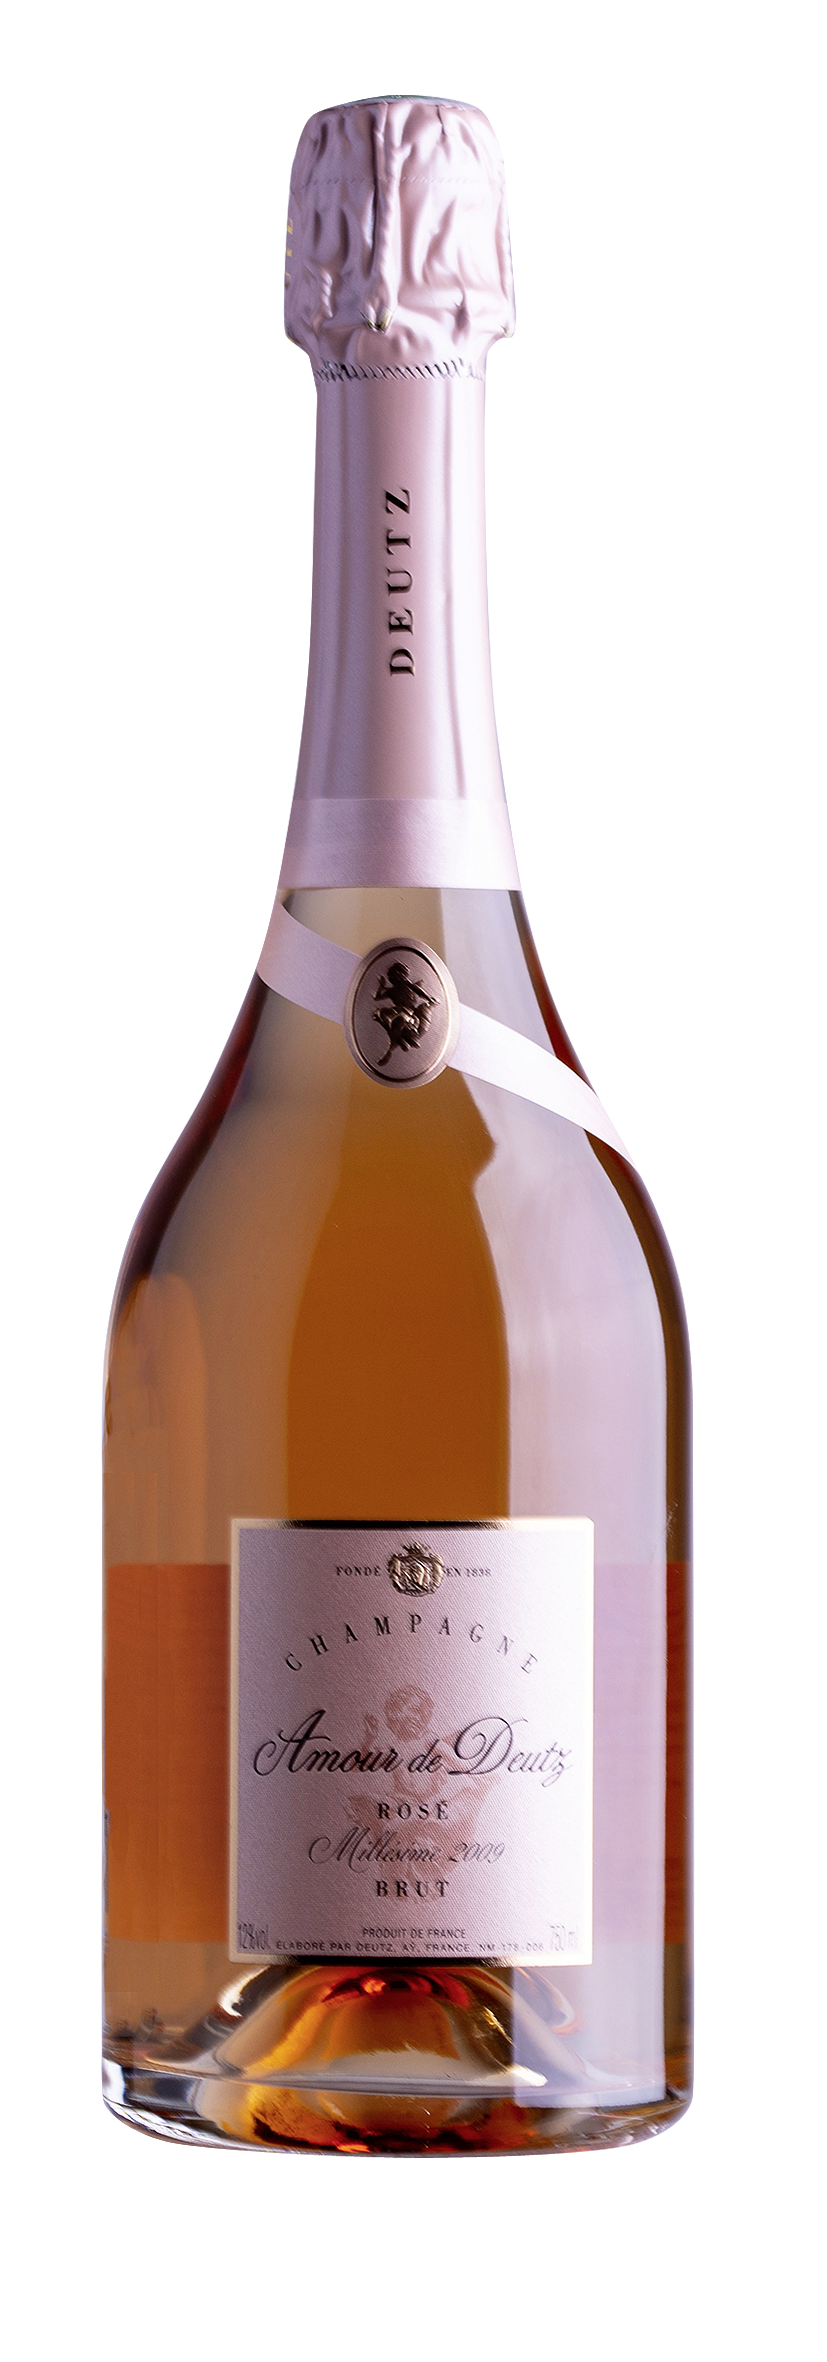 Champagne AOC Amour de Deutz Rosé 2009